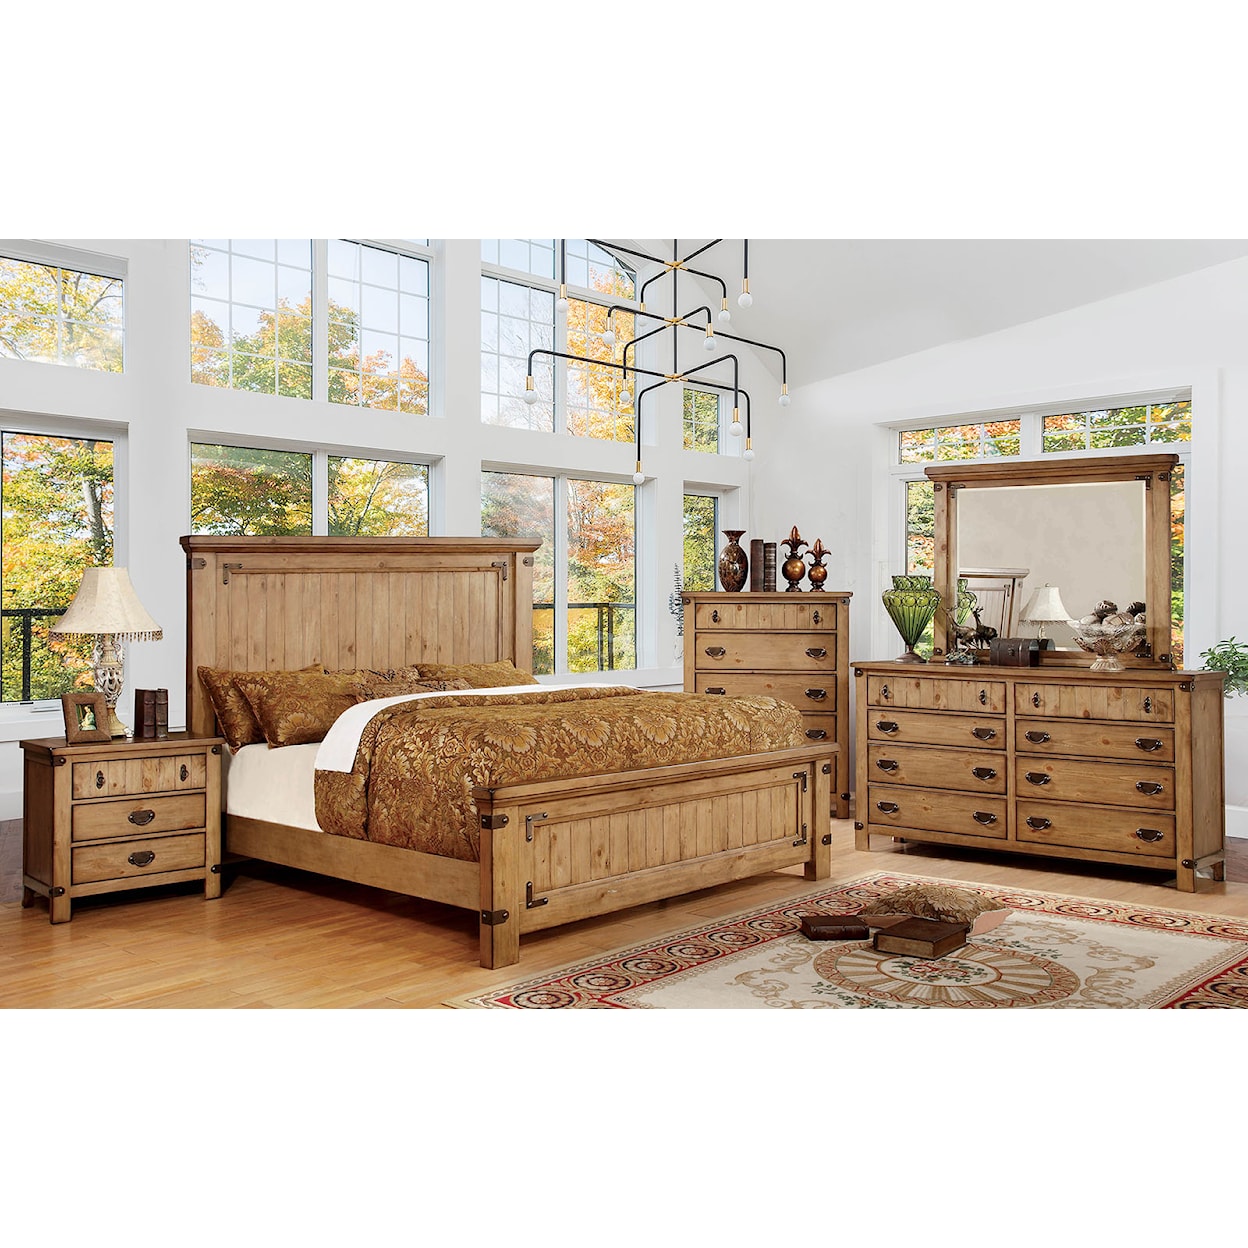 Furniture of America Carlsbad 4-Piece Queen Bedroom Set